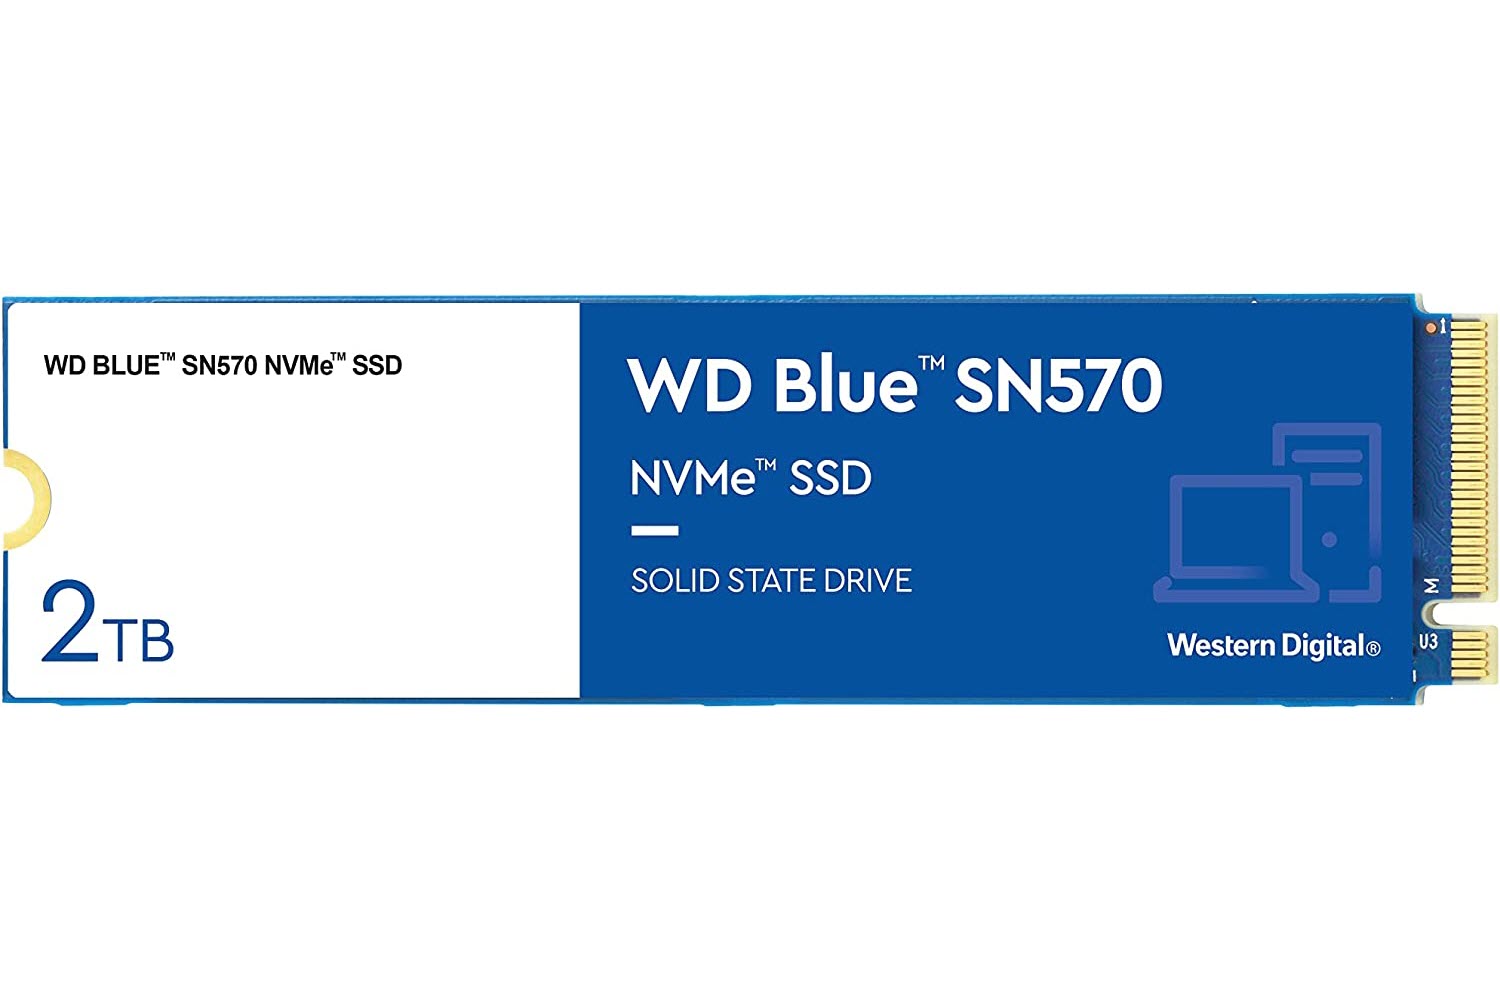 2TB WD Blue SN570 NVMe SSD